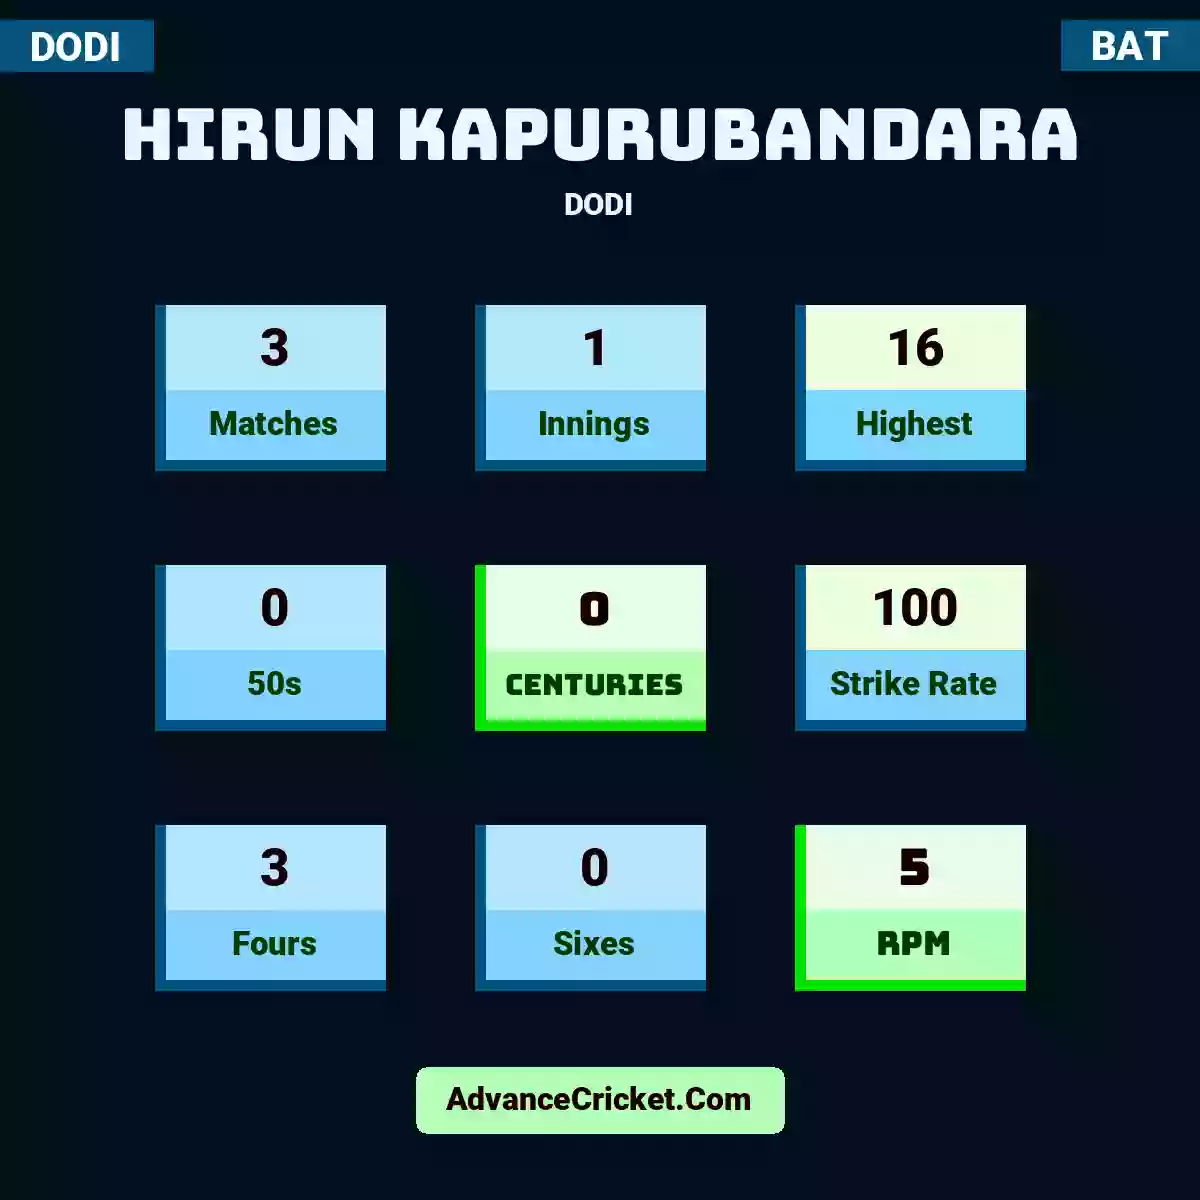 Hirun Kapurubandara DODI , Hirun Kapurubandara played 3 matches, scored 16 runs as highest, 0 half-centuries, and 0 centuries, with a strike rate of 100. H.Kapurubandara hit 3 fours and 0 sixes, with an RPM of 5.